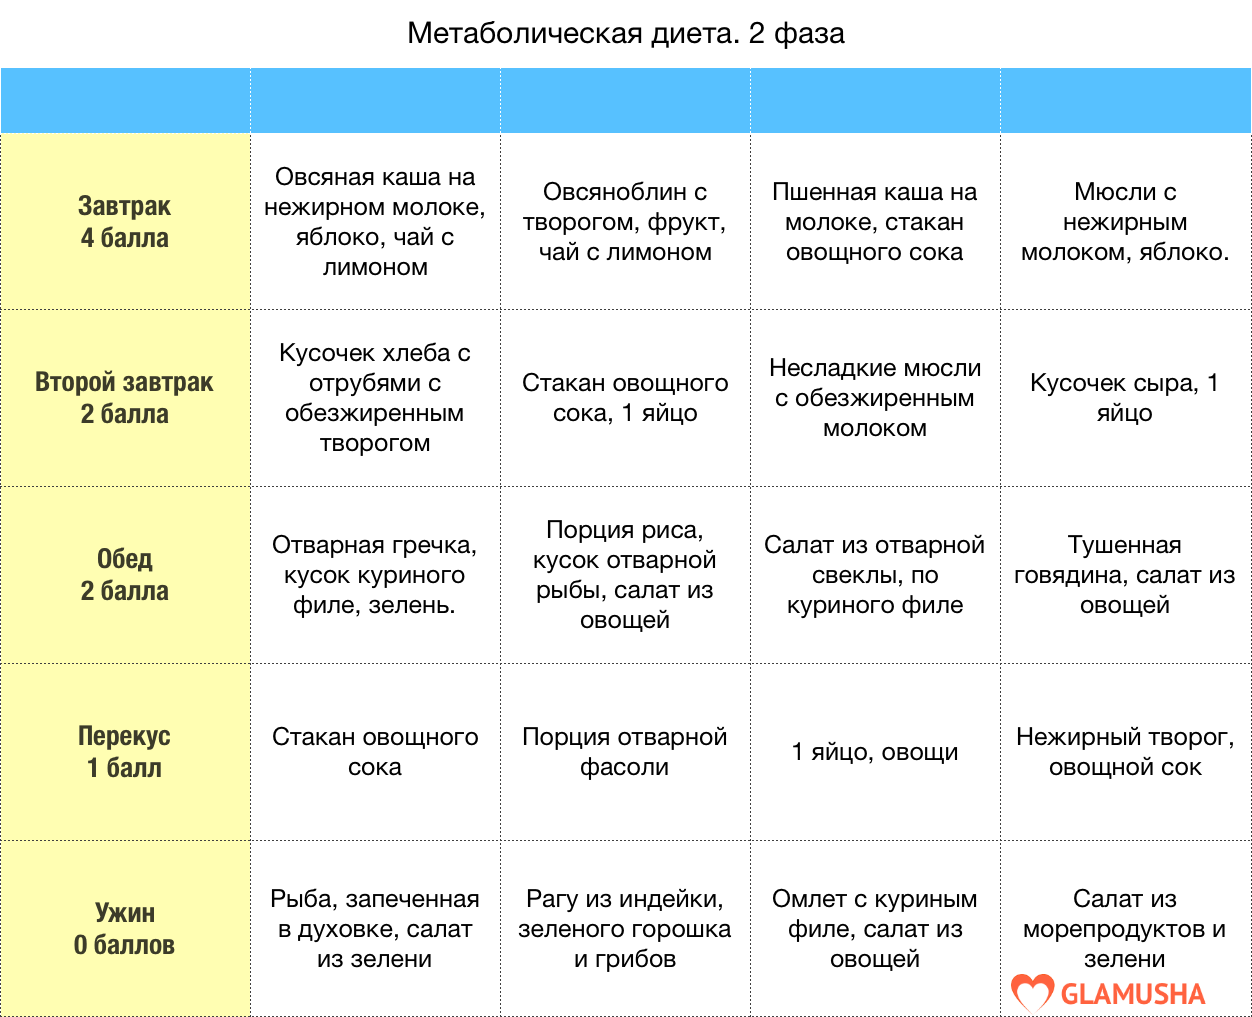 Кремлевская диета для начинающих. полное руководство.